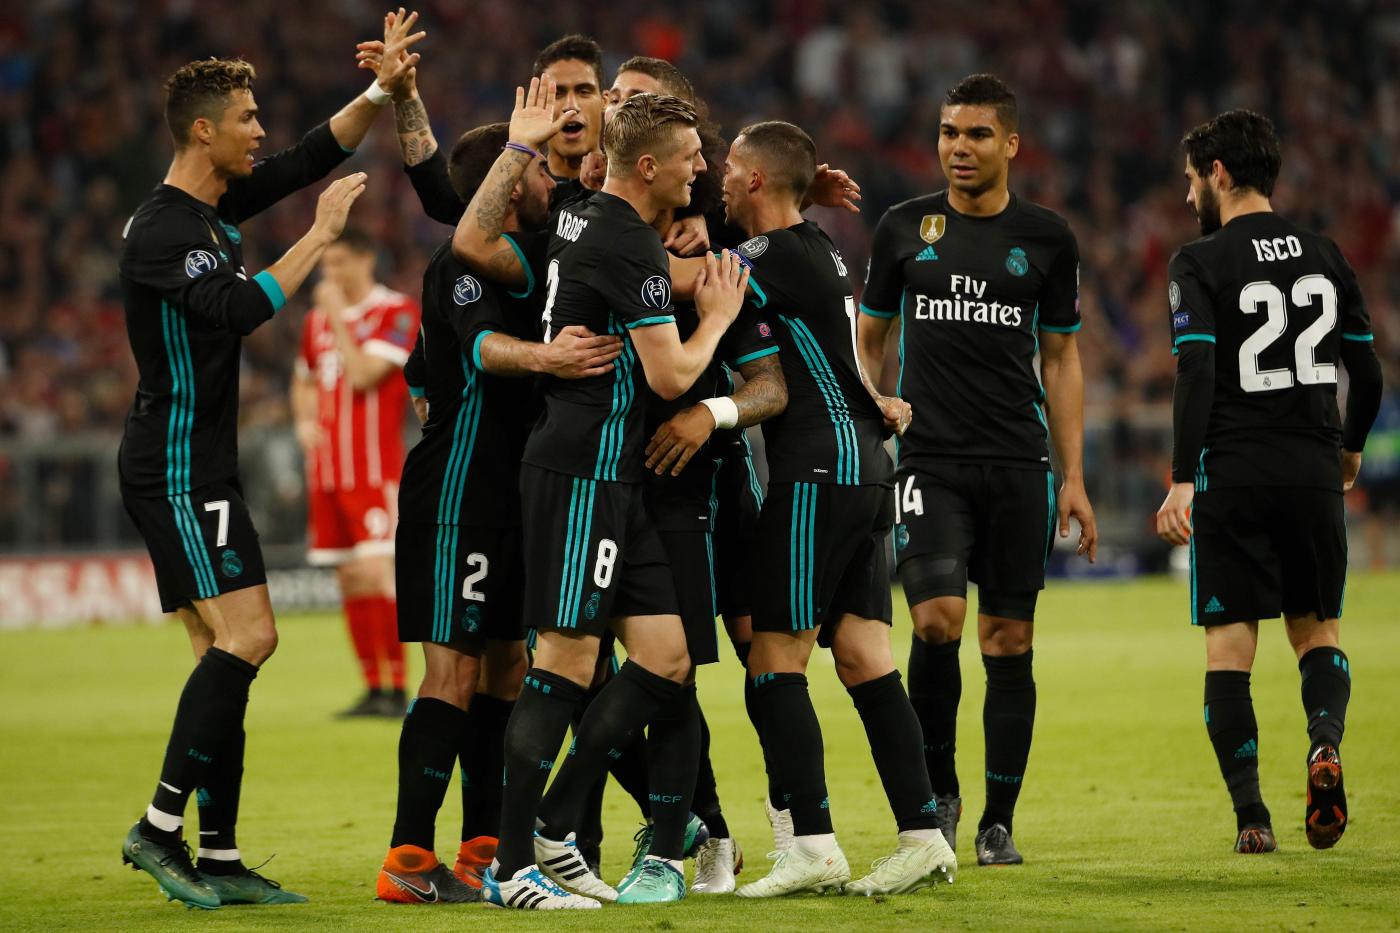 Real Madrid-Celta Vigo sabato 12 maggio, analisi e pronostico LaLiga